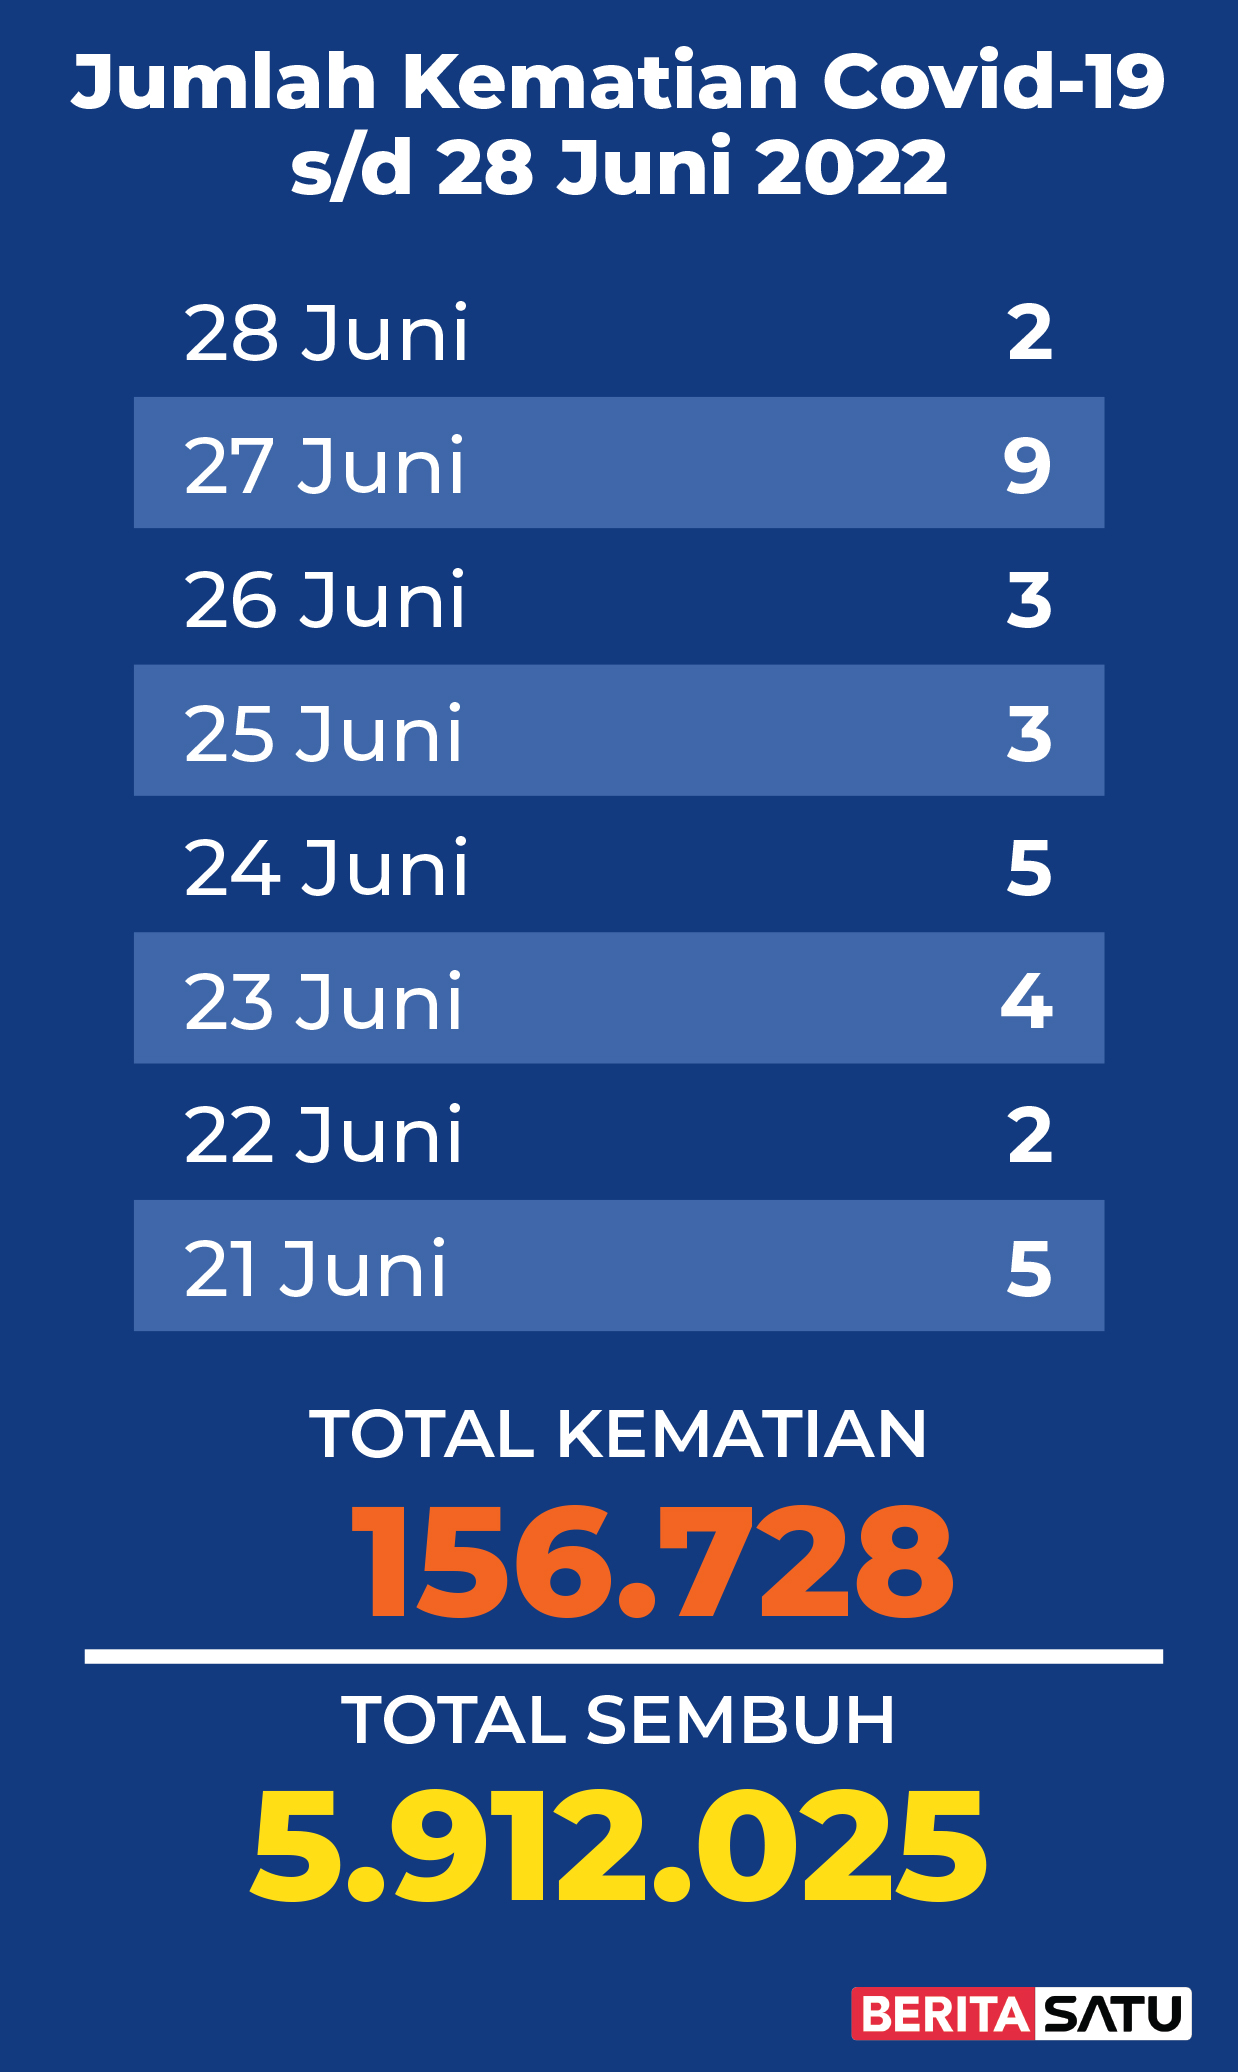 Data Kematian Covid-19 di Indonesia sampai 28 Juni 2022